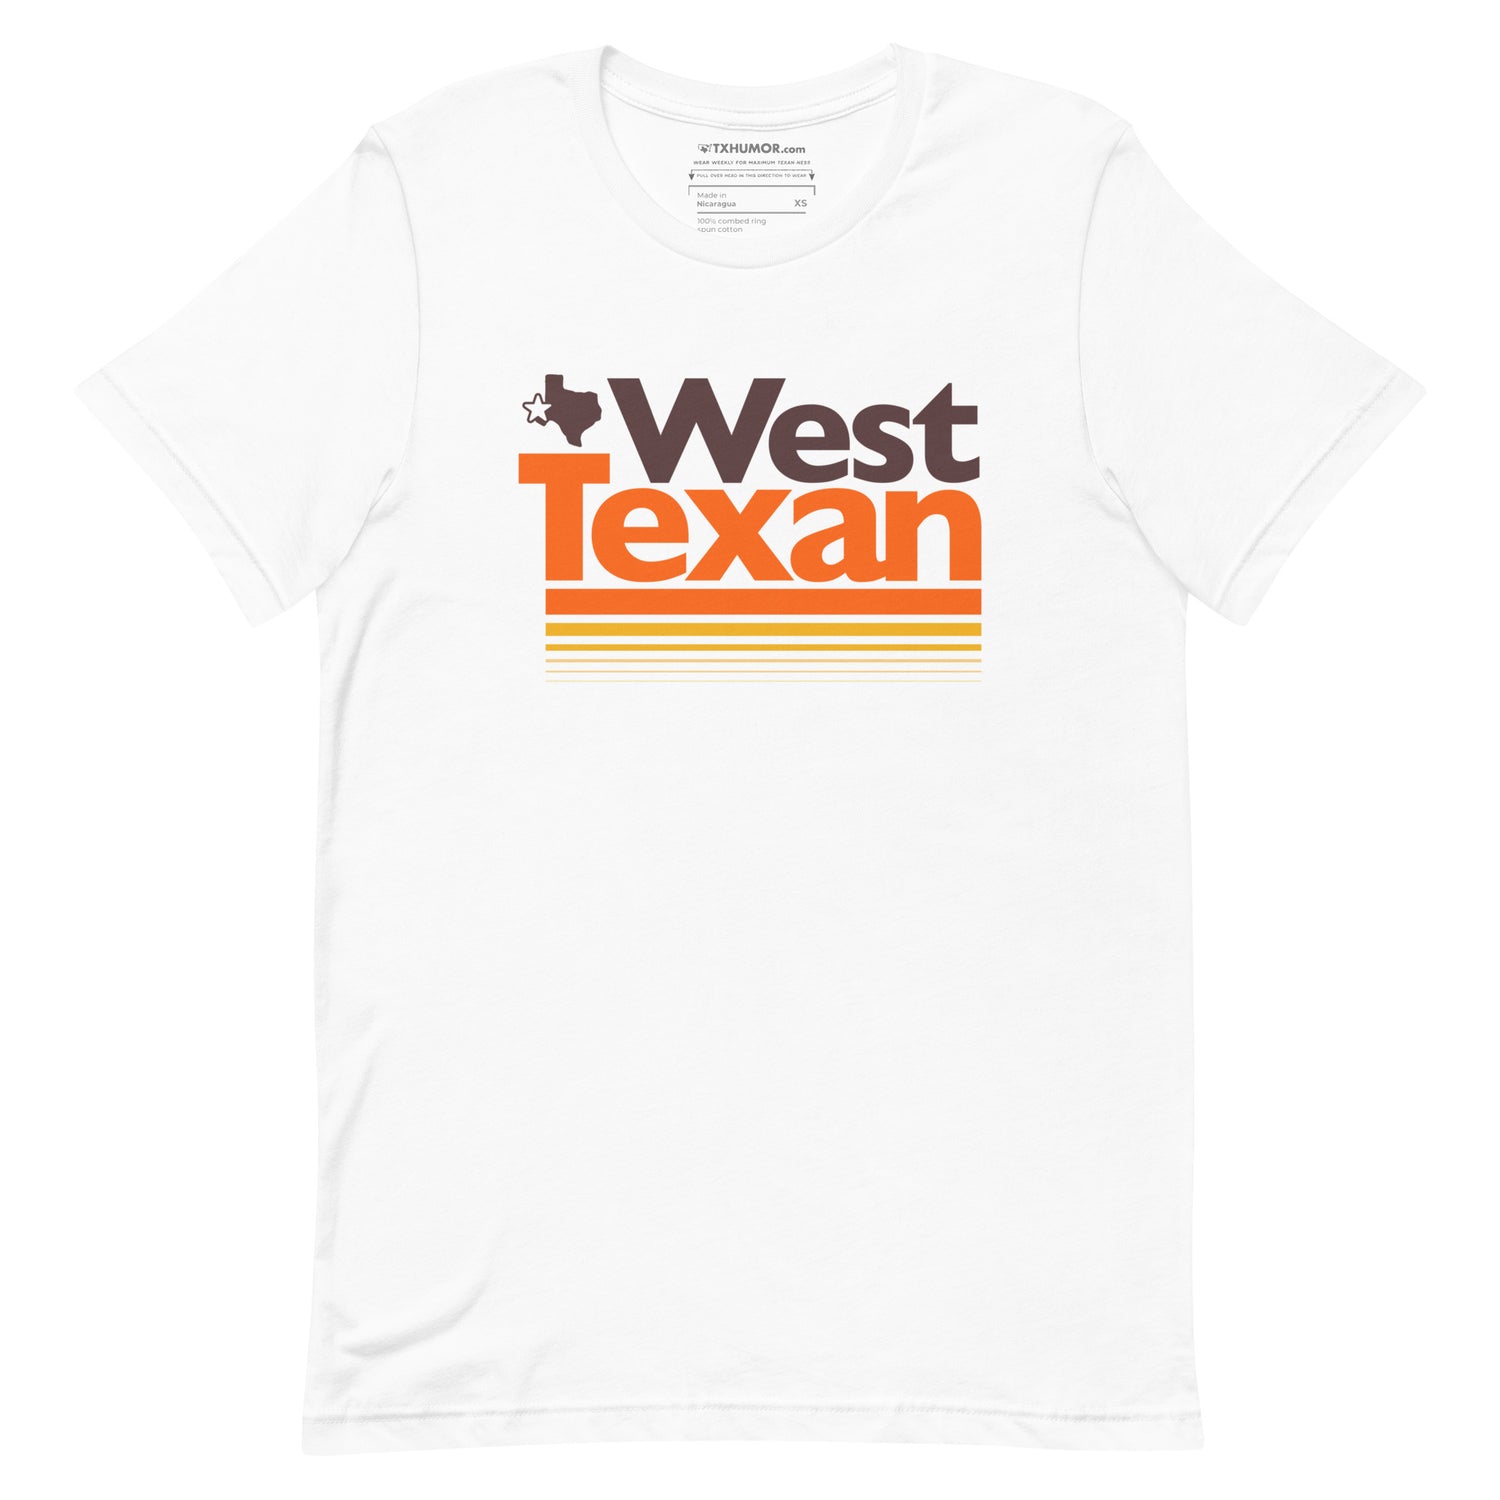 West Texan T-shirt